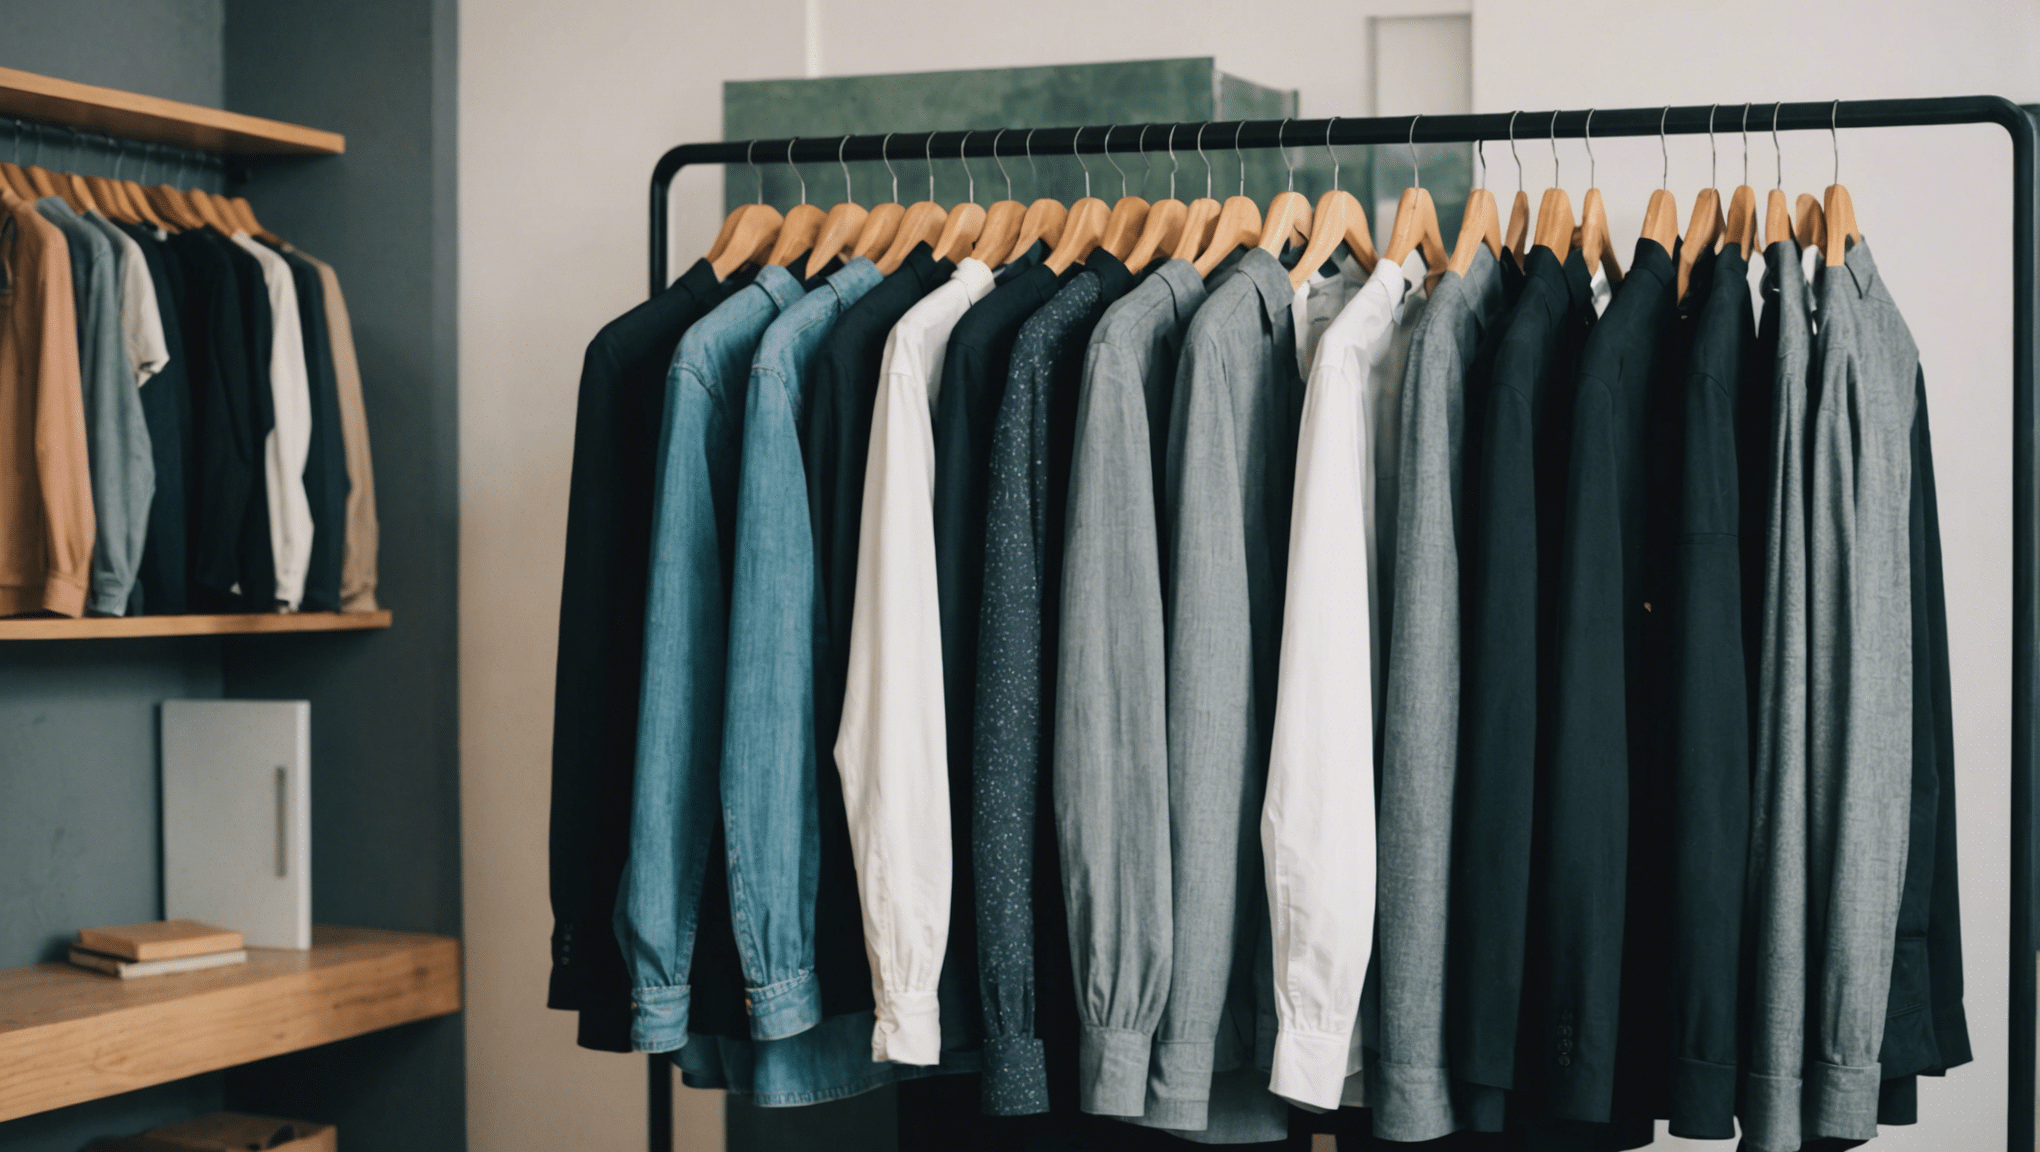 découvrez nos 7 conseils infaillibles pour vendre vos vêtements rapidement sur les plateformes de seconde main !